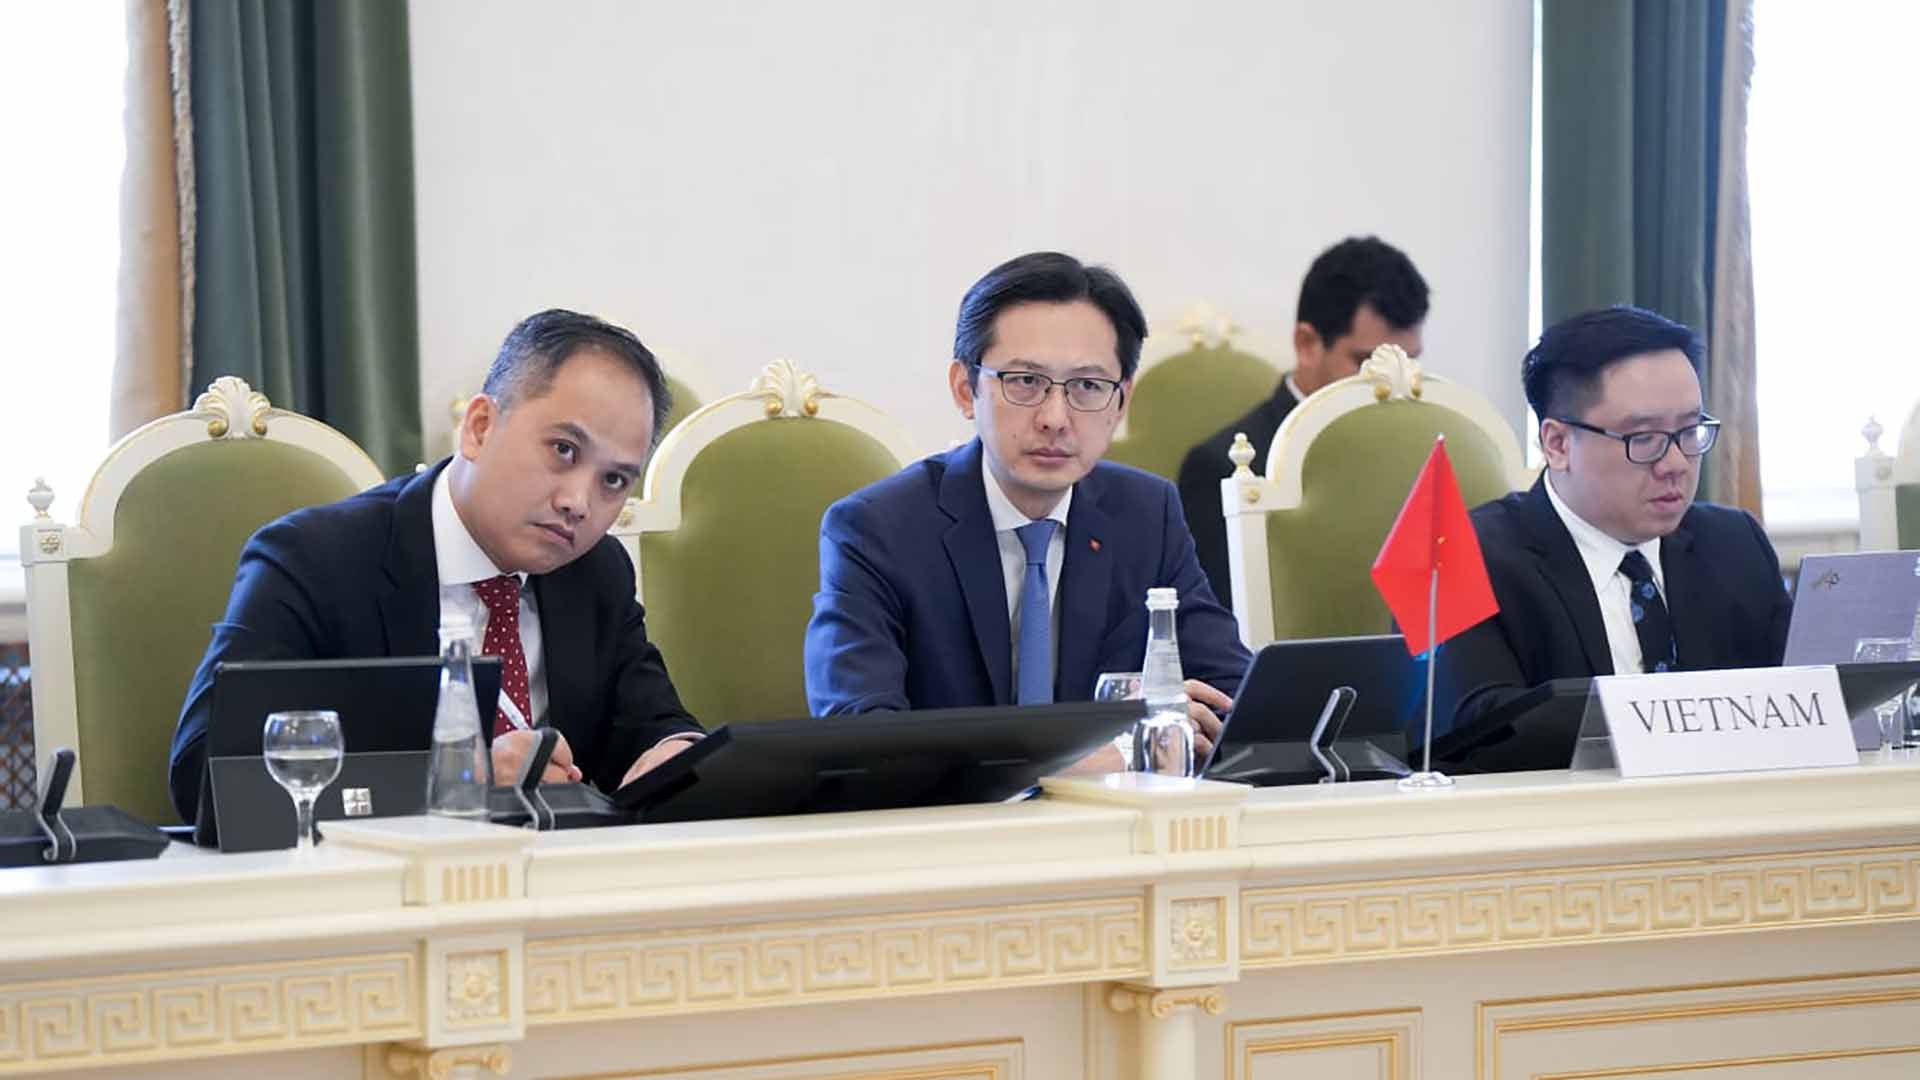 Thứ trưởng Ngoại giao Đỗ Hùng Việt tham dự cuộc họp Quan chức cao cấp ASEAN-Nga lần thứ 20